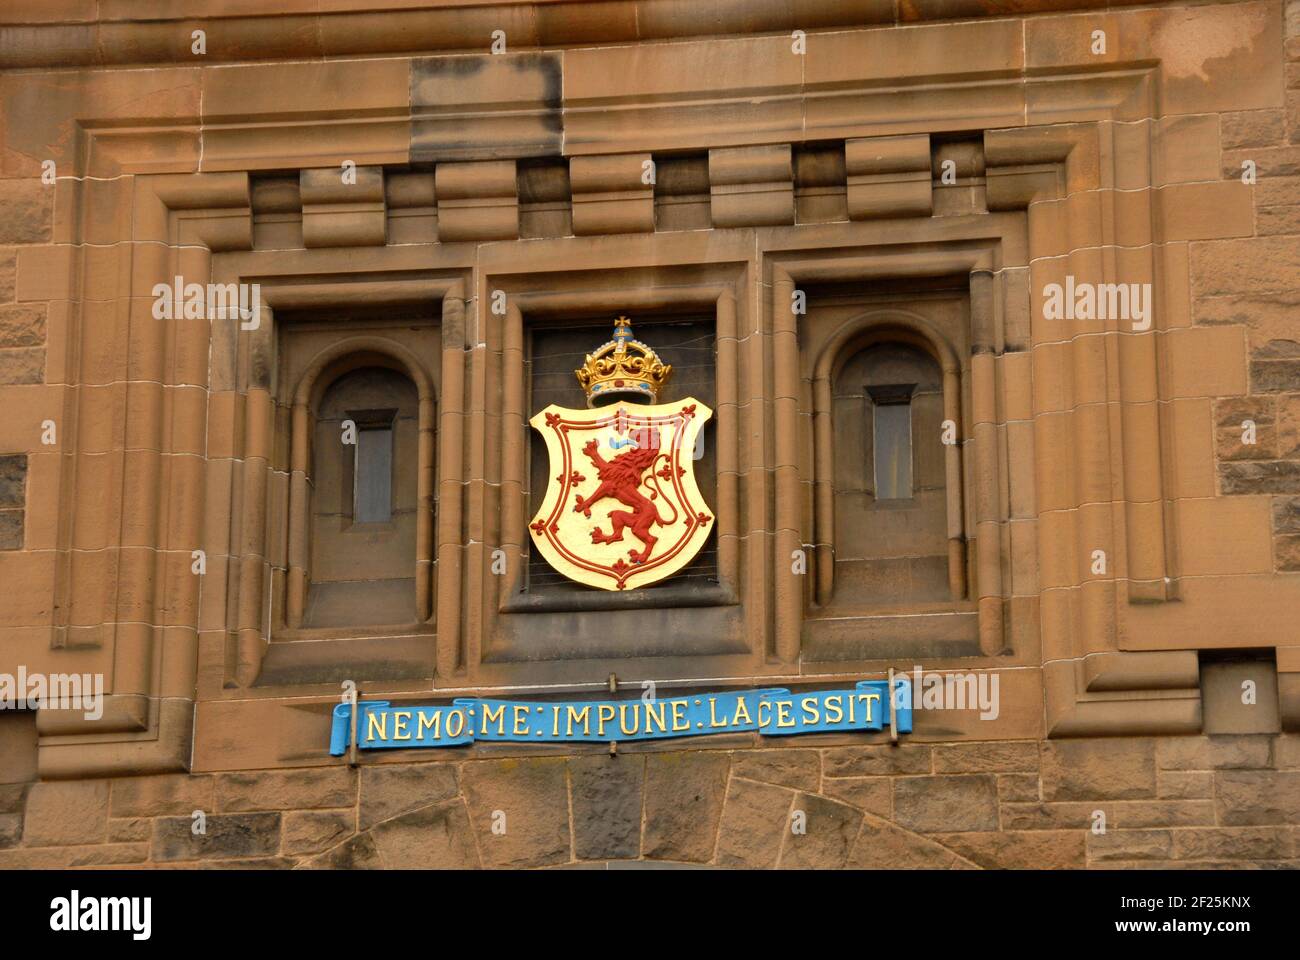 Lateinisches Motto 'Nemo me impune lacessit' mit Einhorn auf A Schild überragt von einer Krone über dem Eingang nach Edinburgh Burg Stockfoto